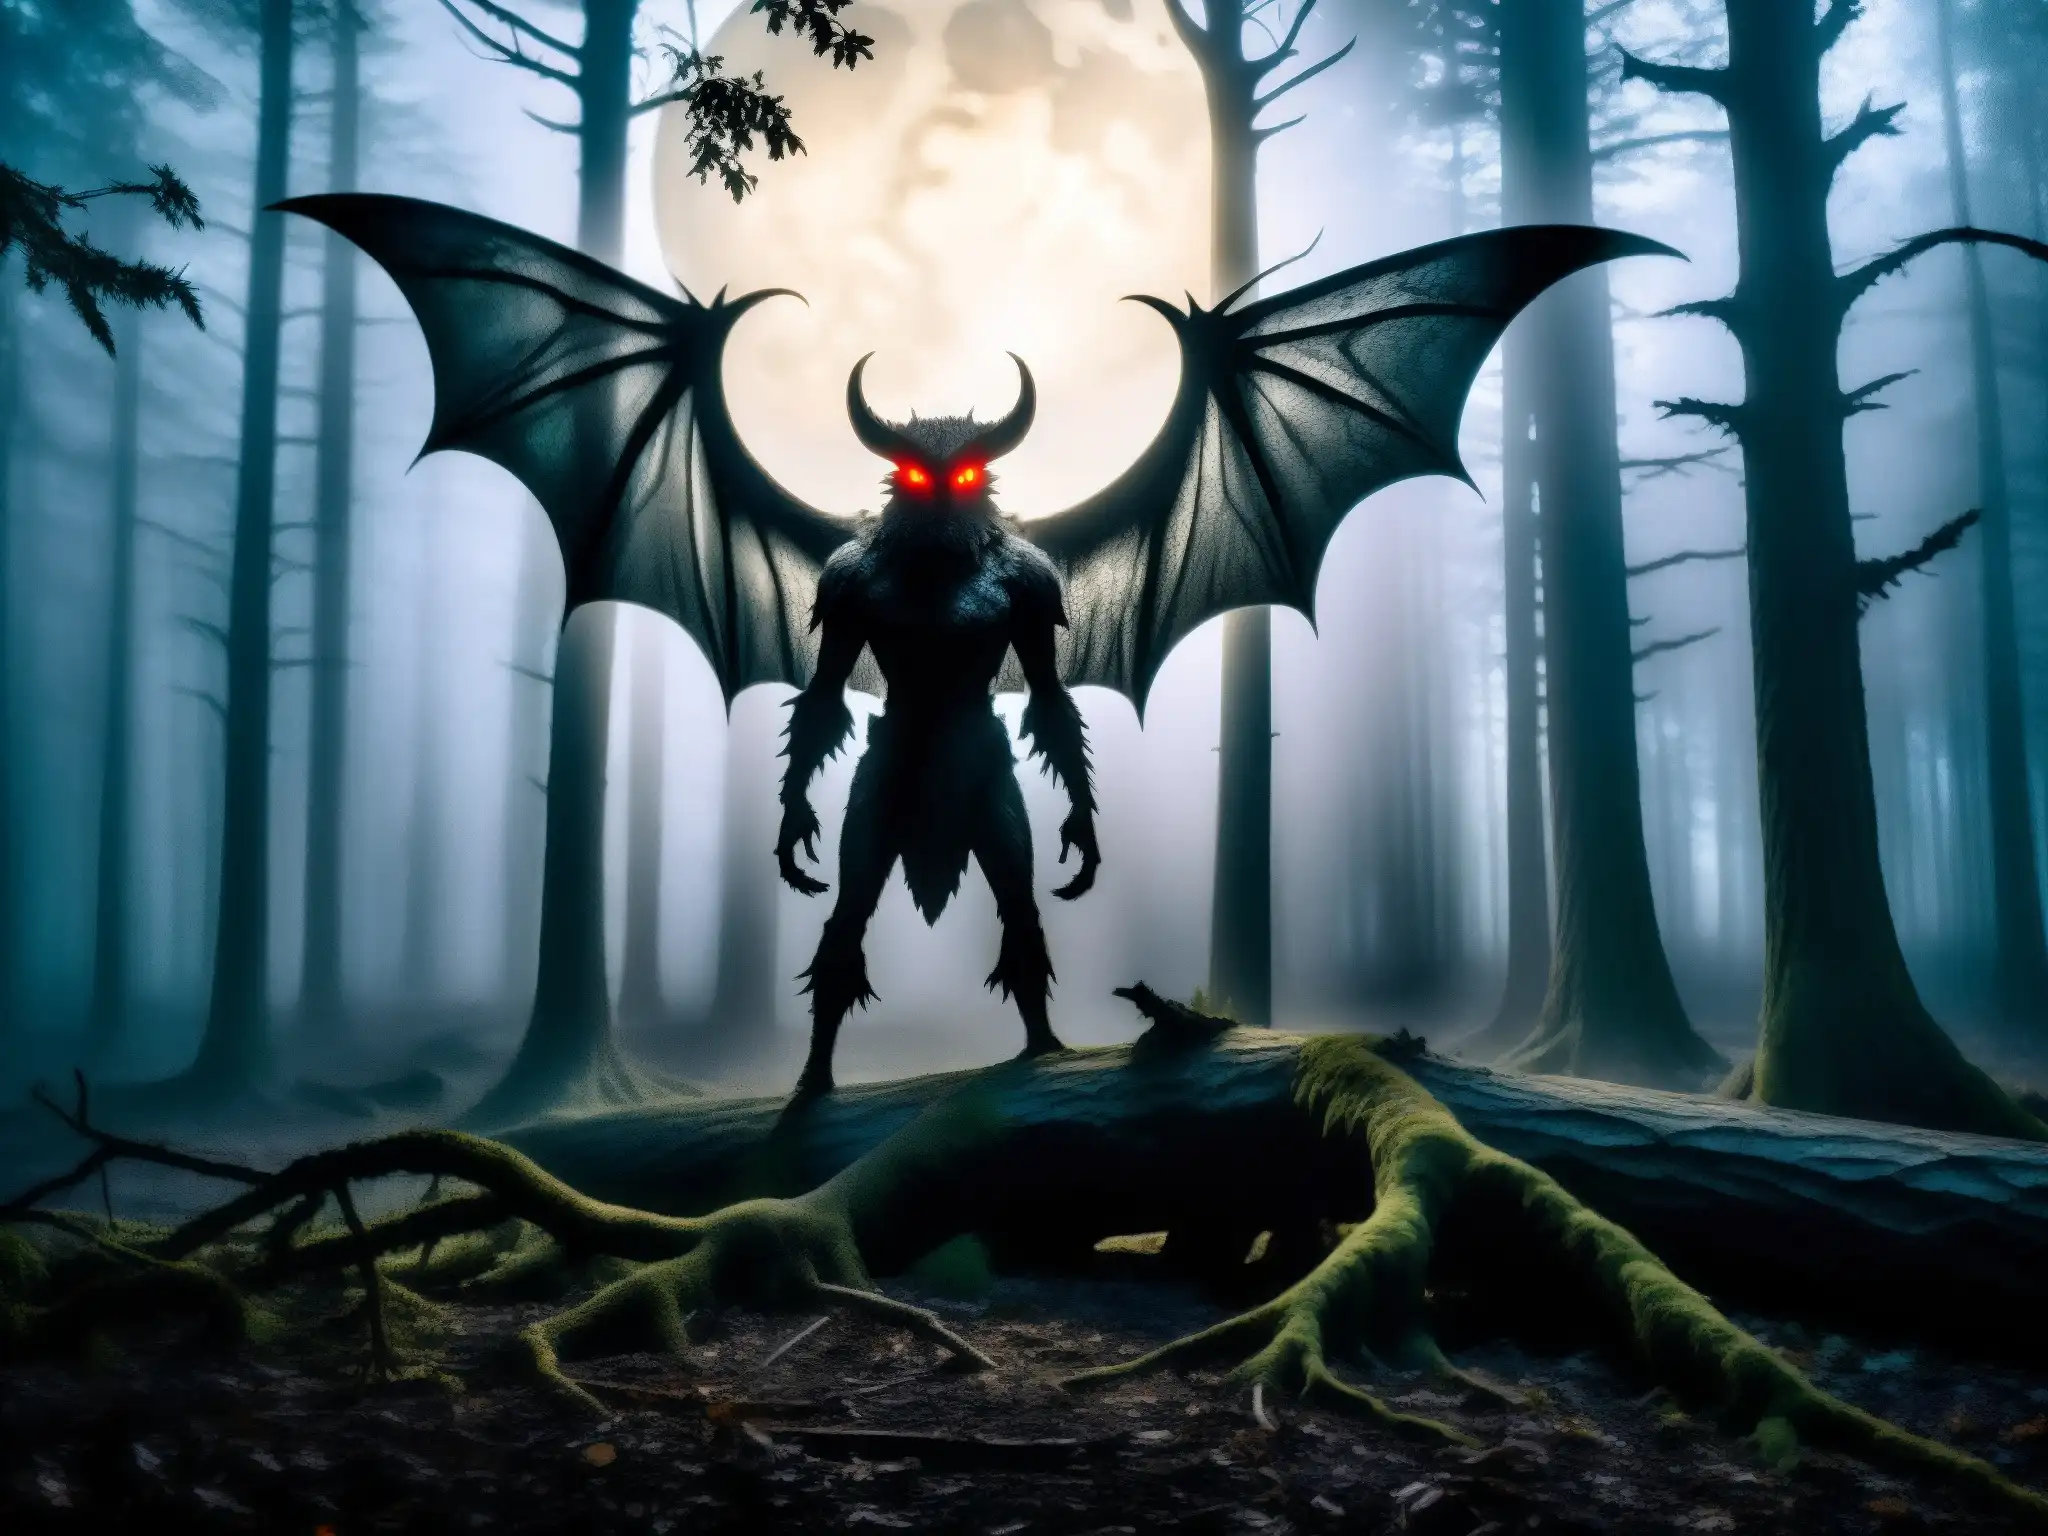 Hombre Polilla leyenda terror nocturno: Bosque oscuro y brumoso iluminado por la luna, árboles retorcidos proyectan sombras inquietantes